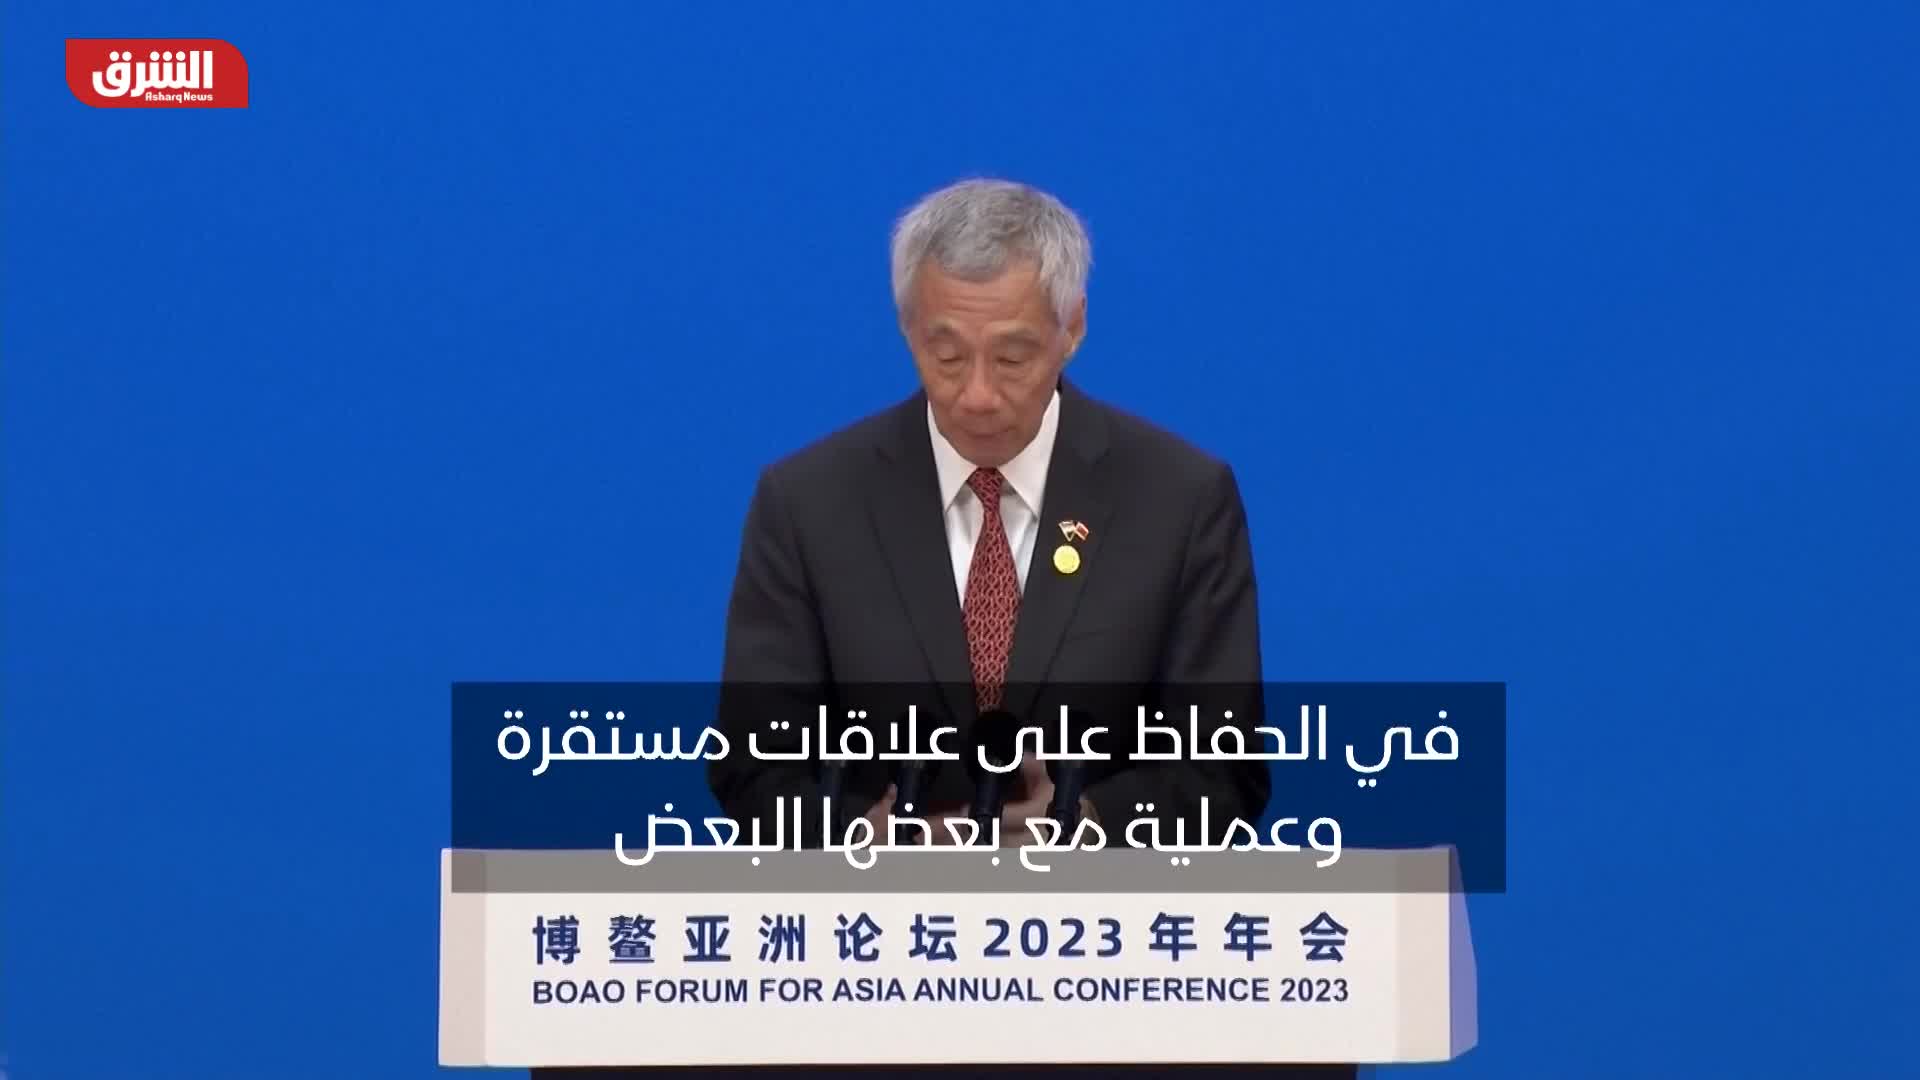 رئيس وزراء سنغافورة: العلاقات بين الولايات المتحدة والصين أكثر إثارة للقلق